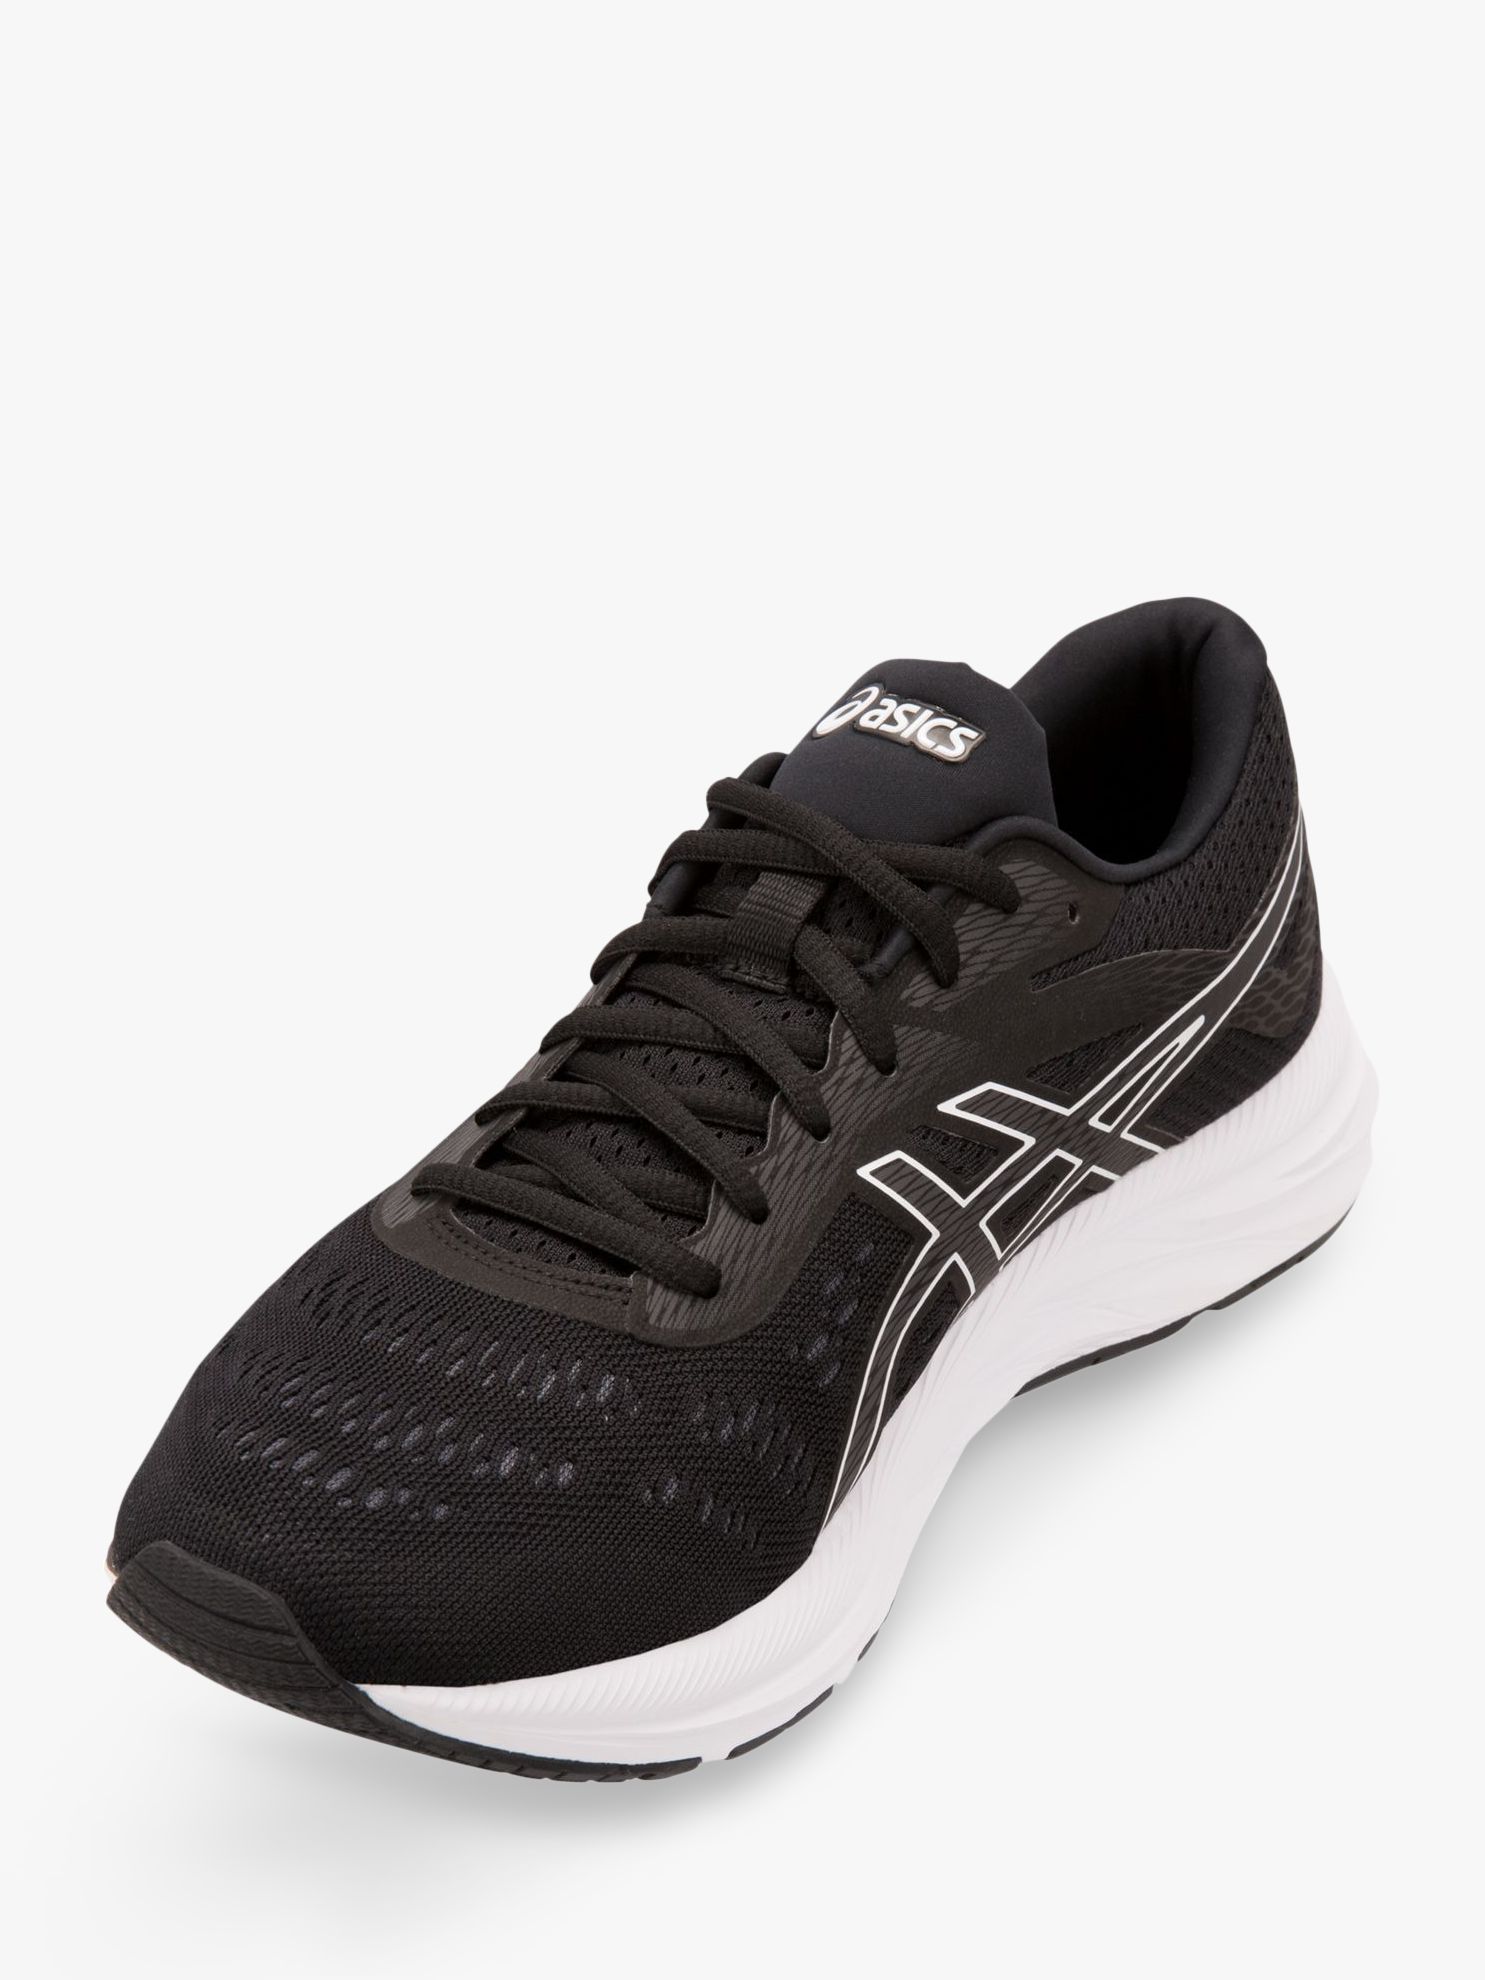 ASICS GEL-EXCITE 6 Men's Running Shoes, Black/White